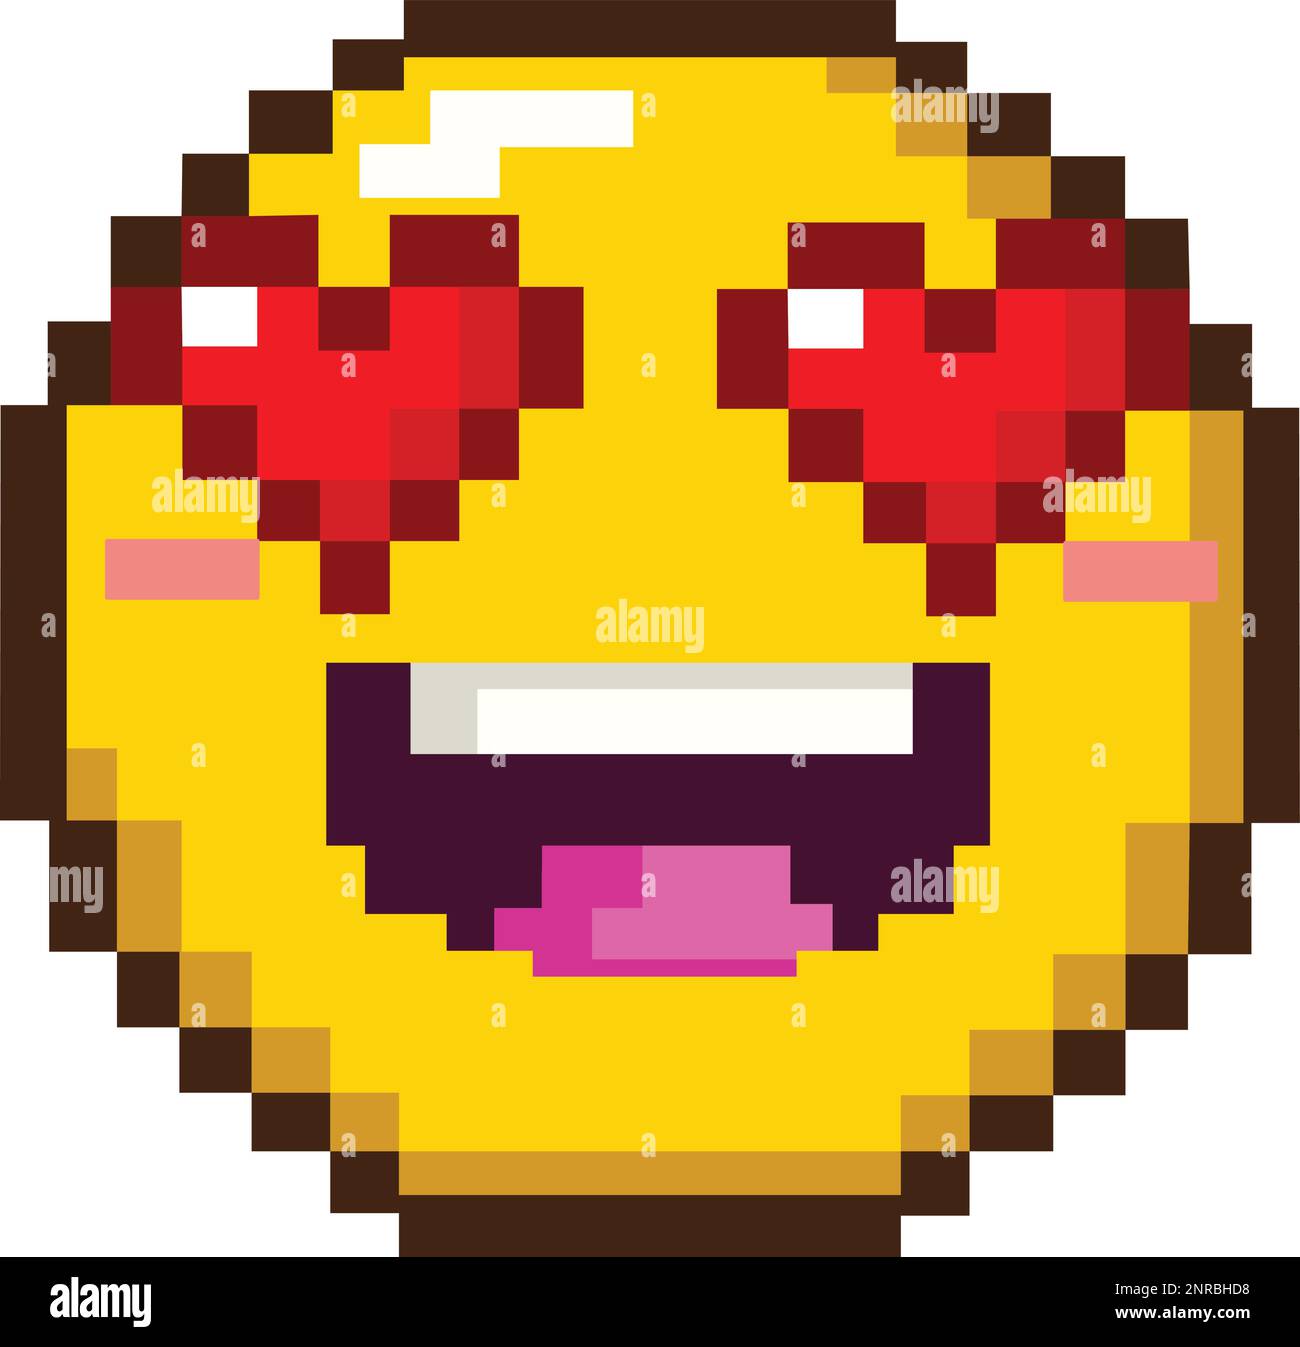 8bit-Pixel-Kunst eines verliebten Emoji-Emoticons mit herzförmigen Augen Stock Vektor